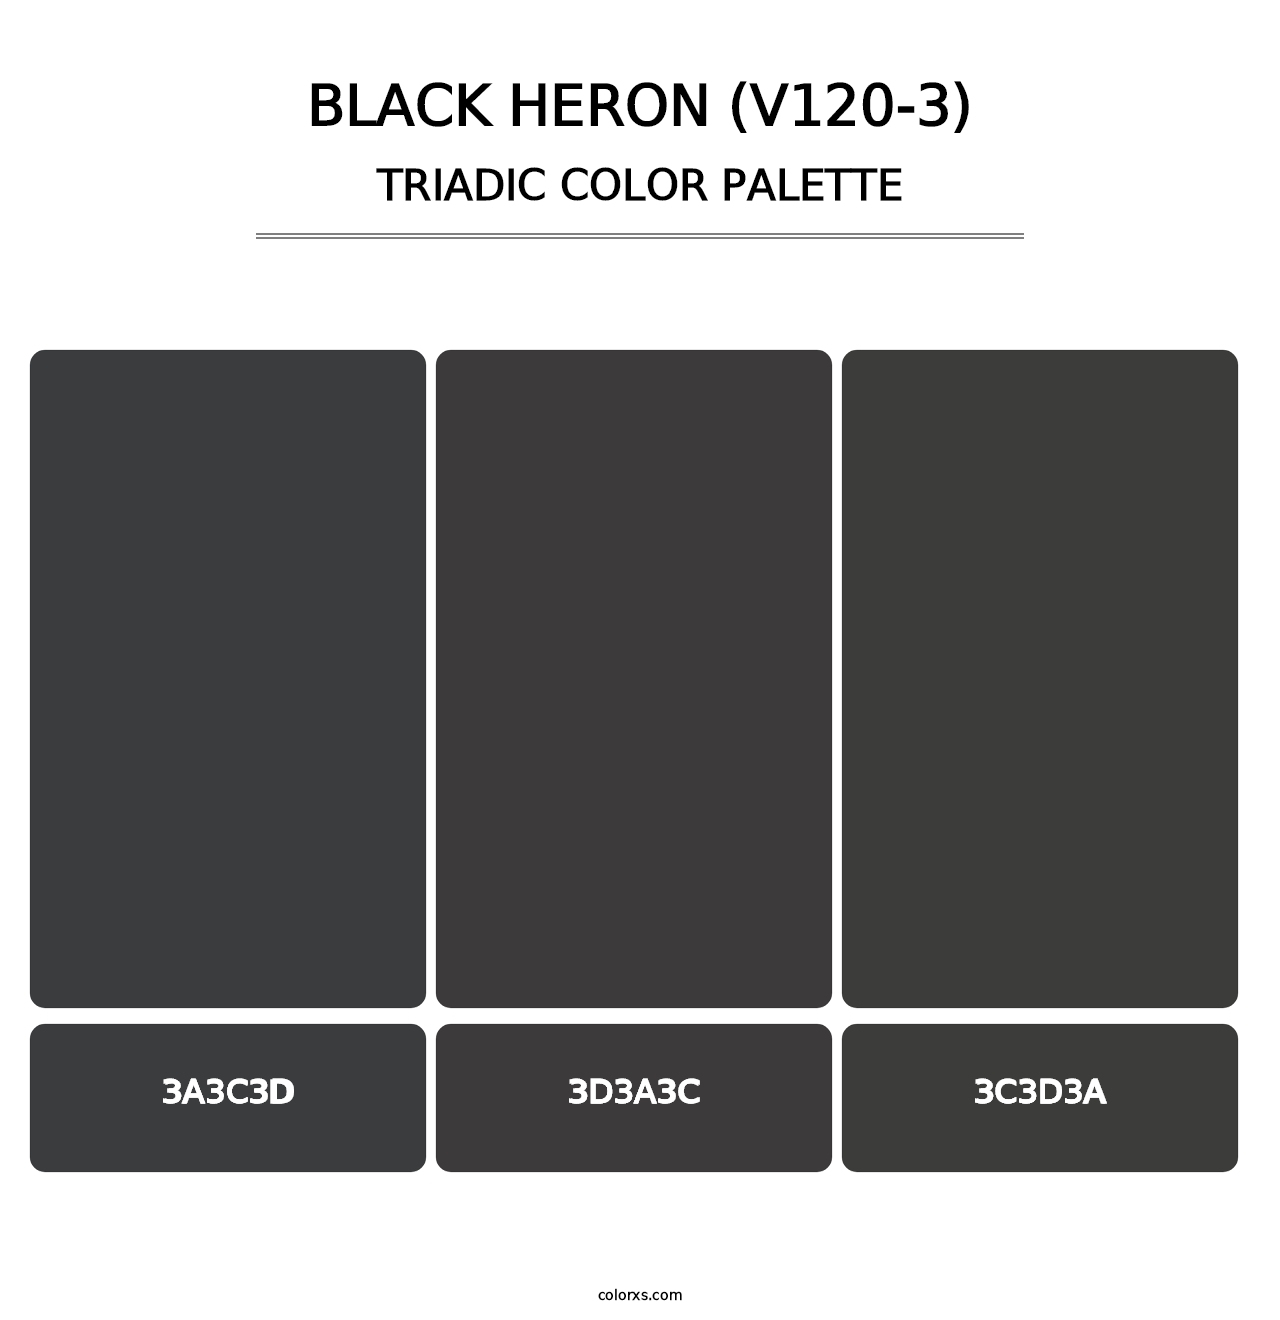 Black Heron (V120-3) - Triadic Color Palette